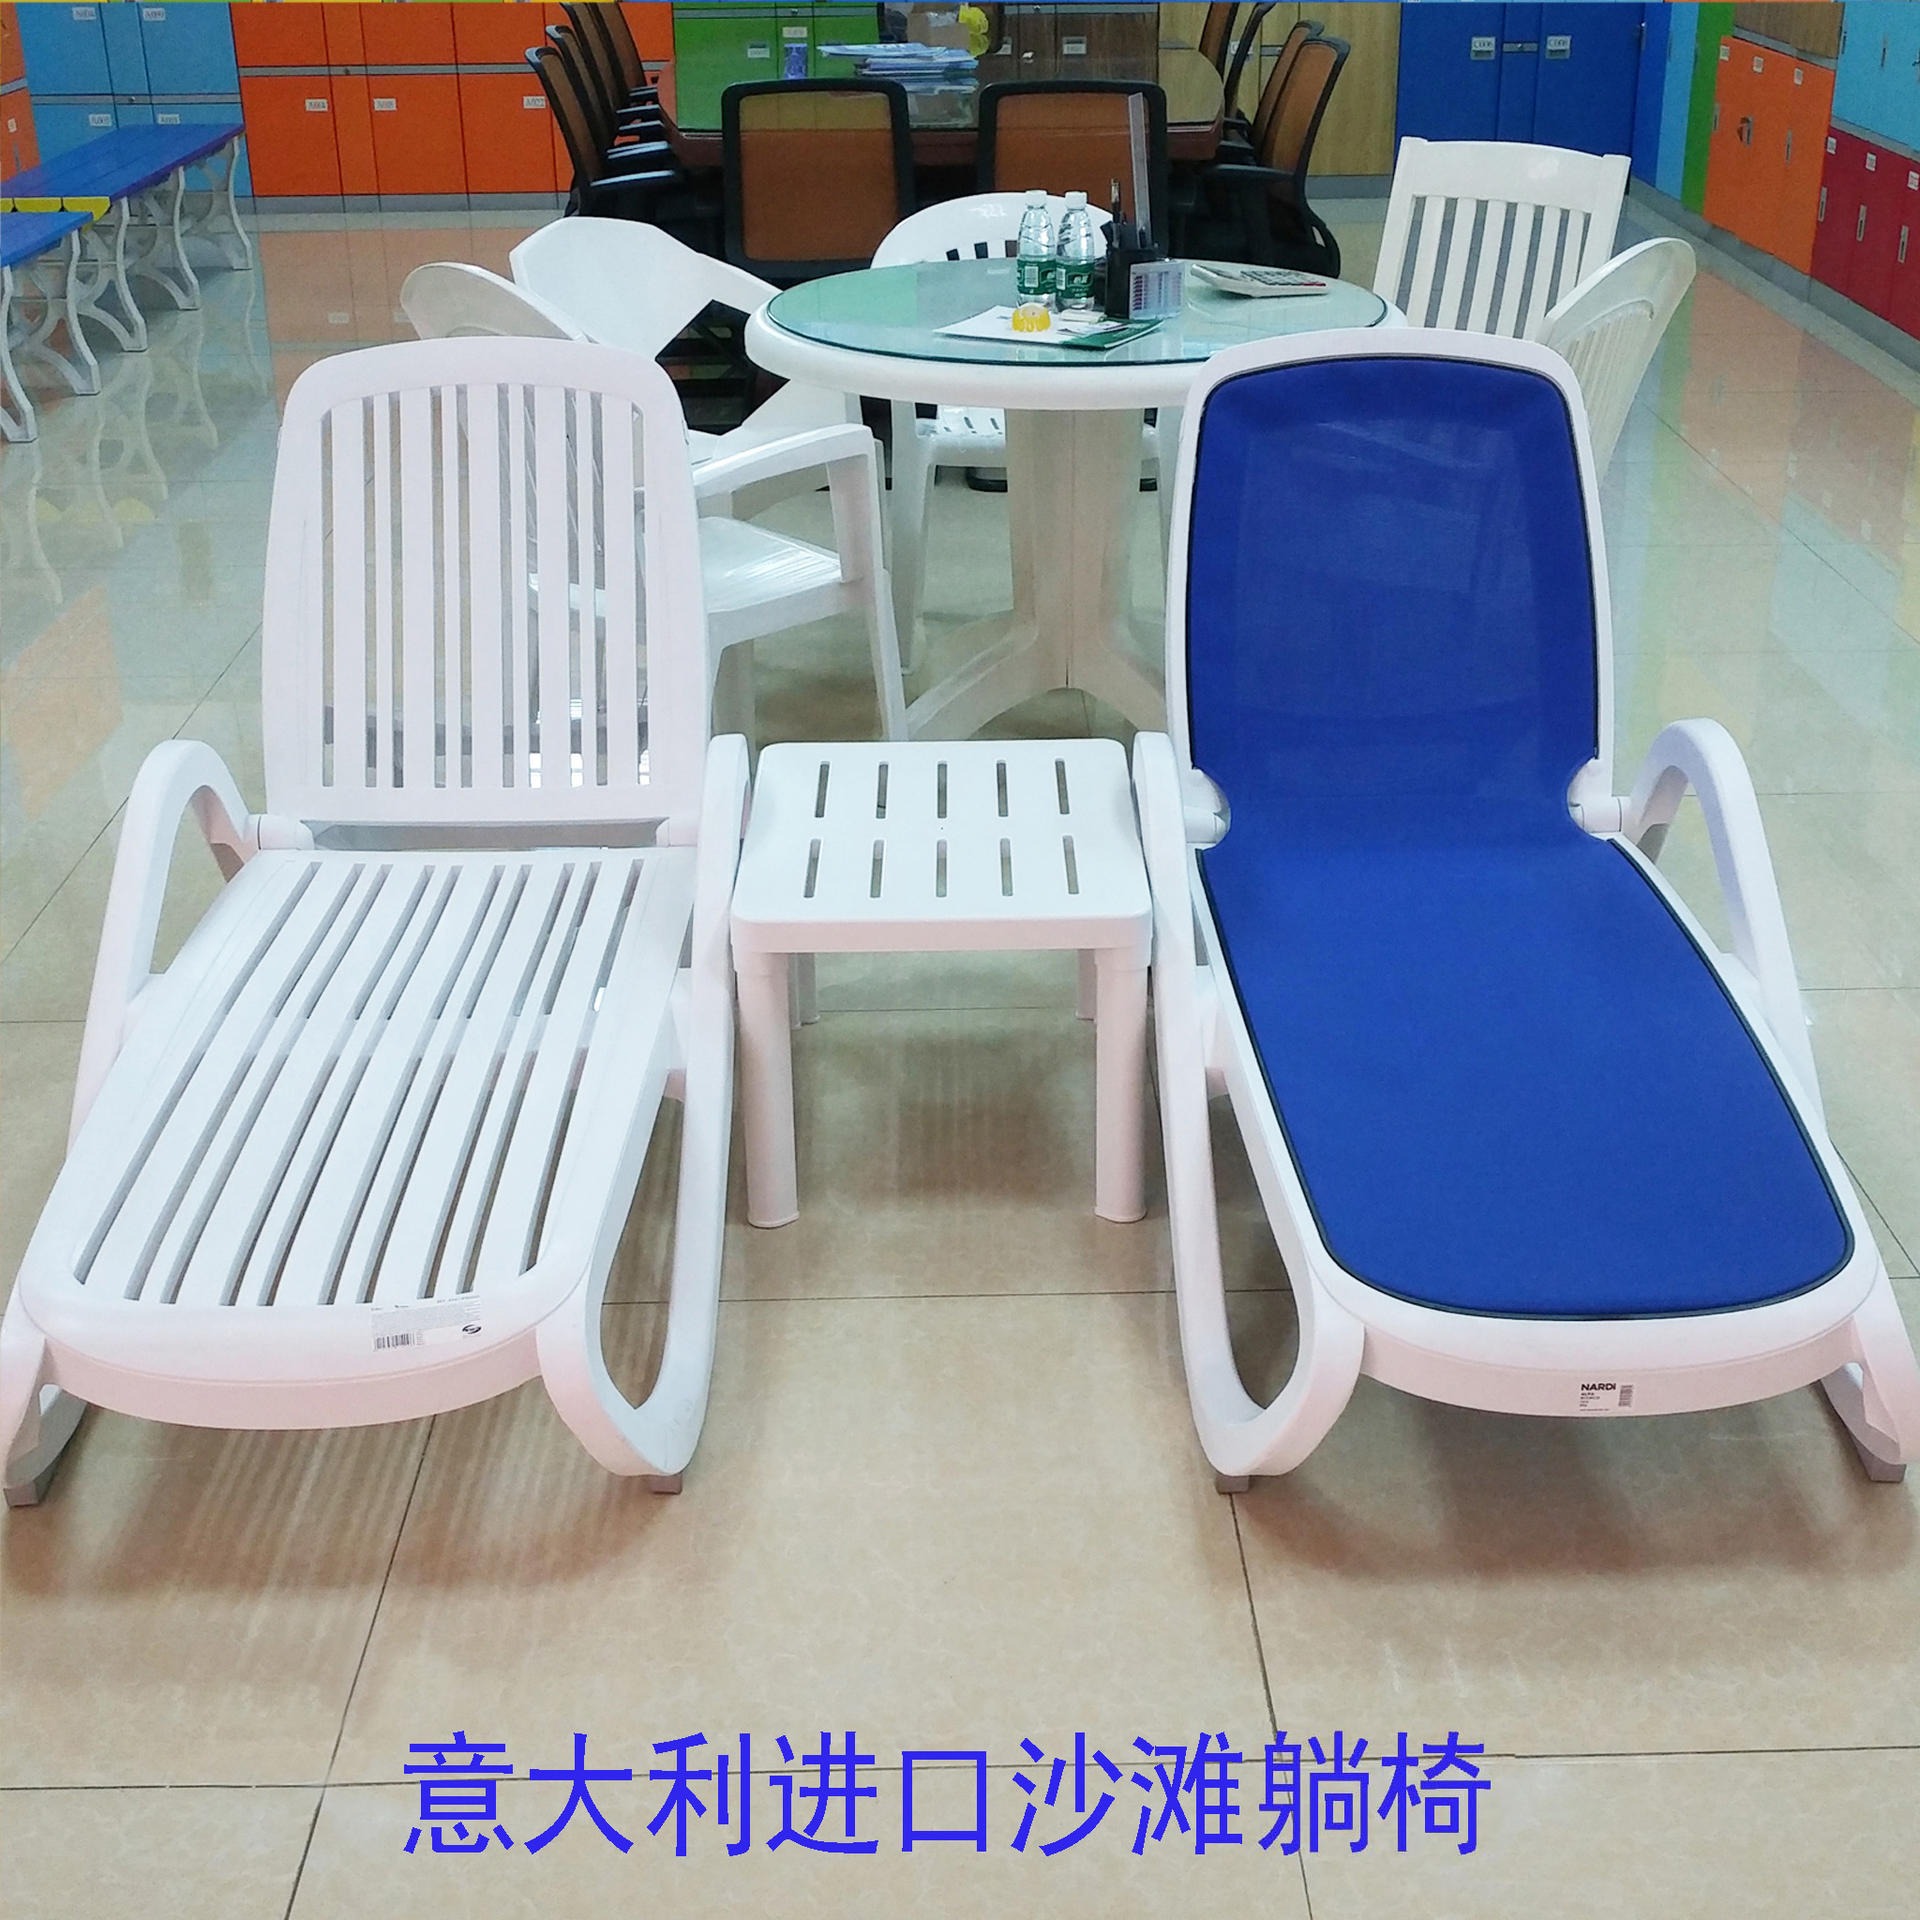 意大利进口ABS塑料沙滩椅 温泉沙滩躺椅 创意塑料沙滩躺椅厂家批发图片